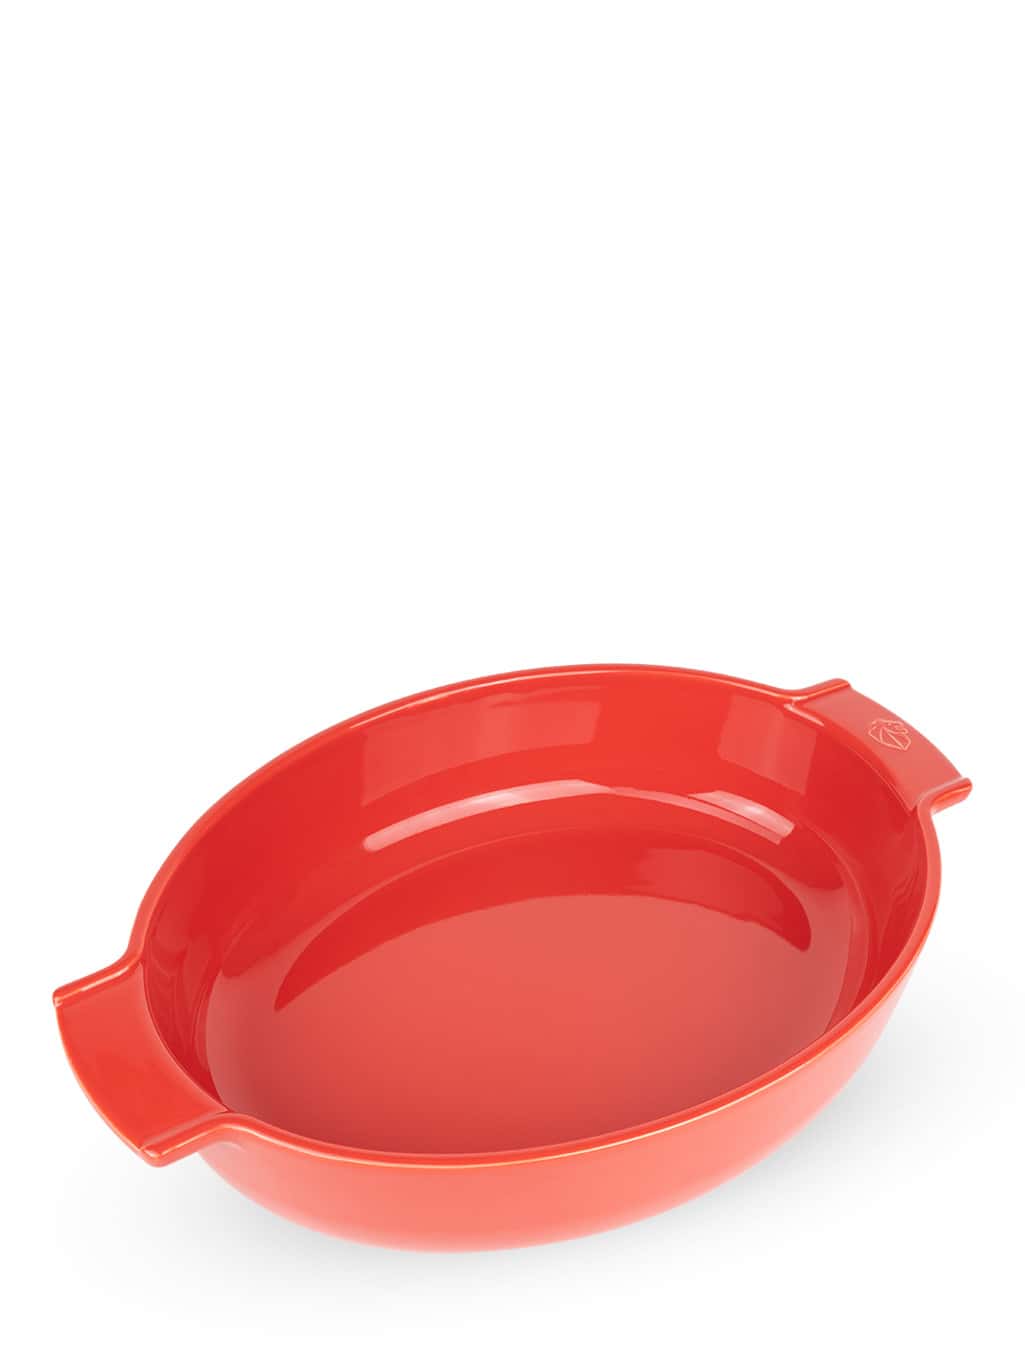 Image of Appolia Red Ceramic Oval Baking Dish, 40cm Appolia